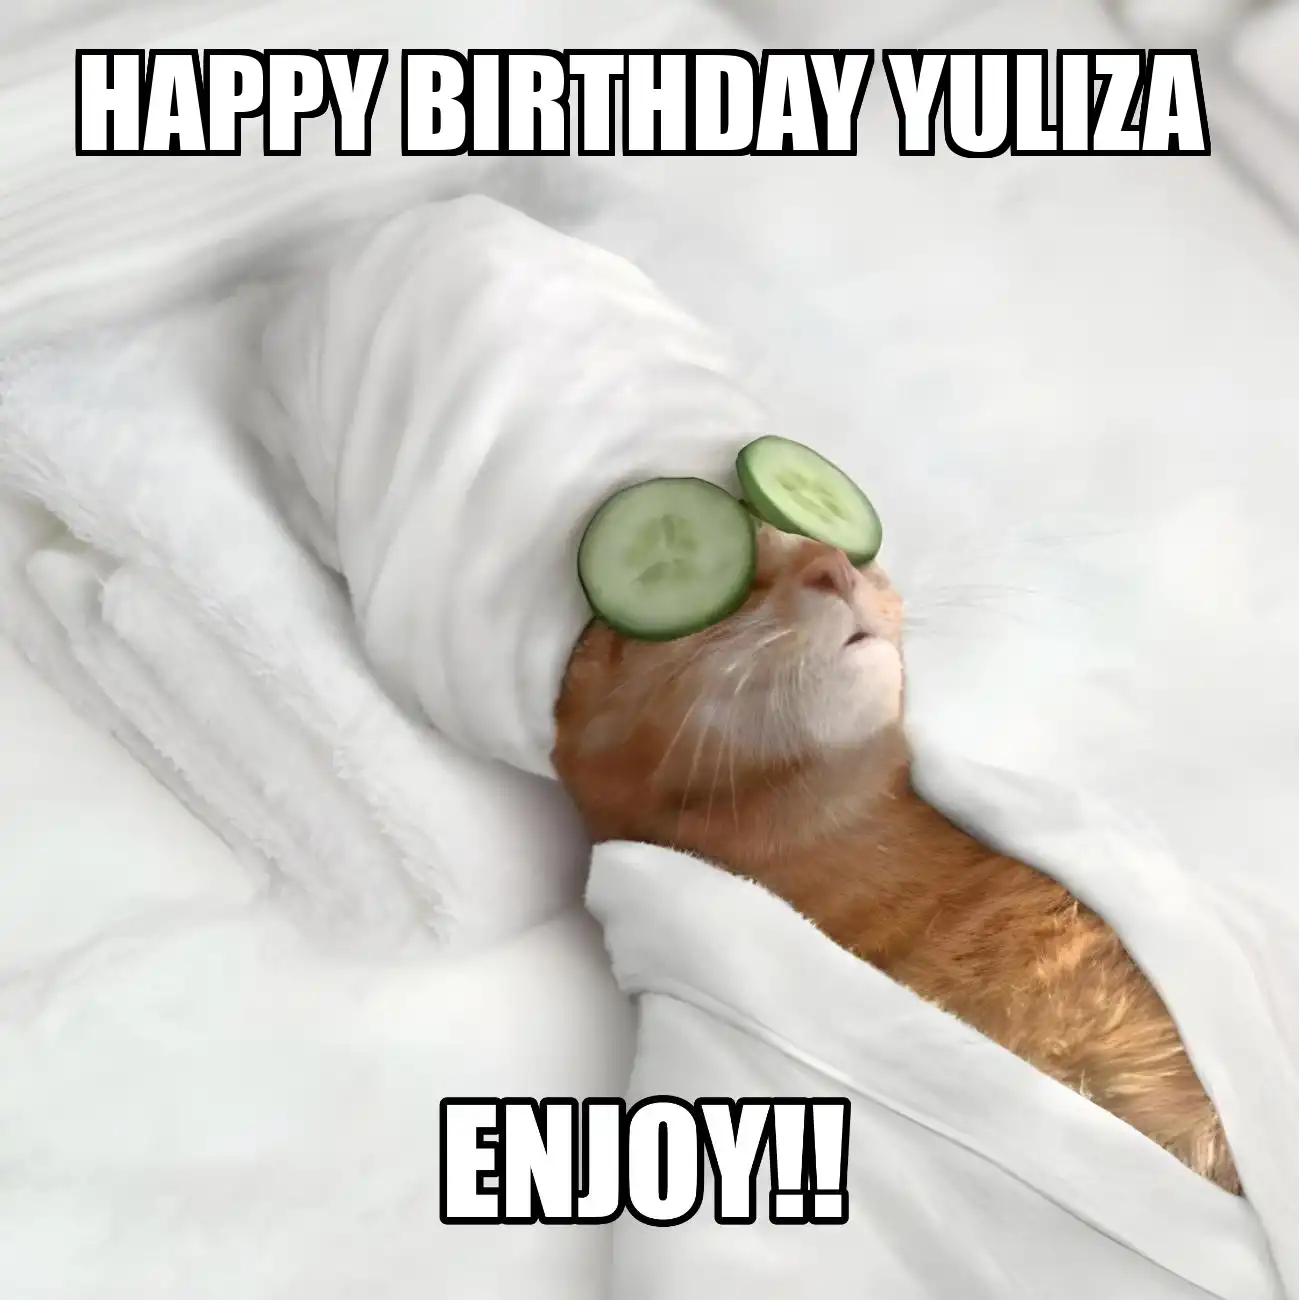 Happy Birthday Yuliza Enjoy Cat Meme